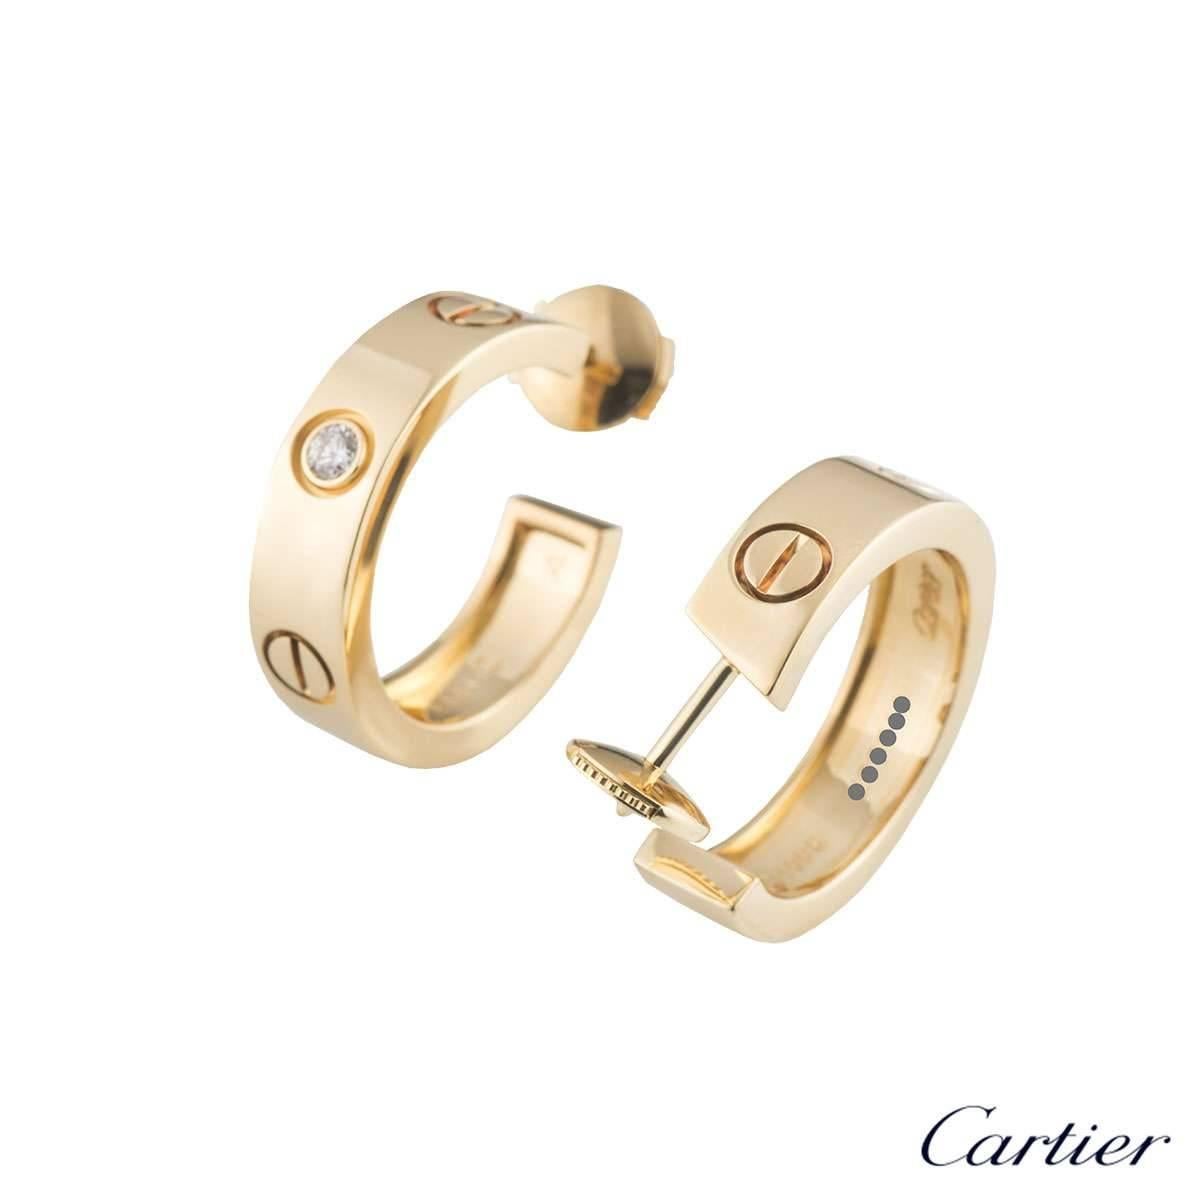 cartier love earrings dimensions